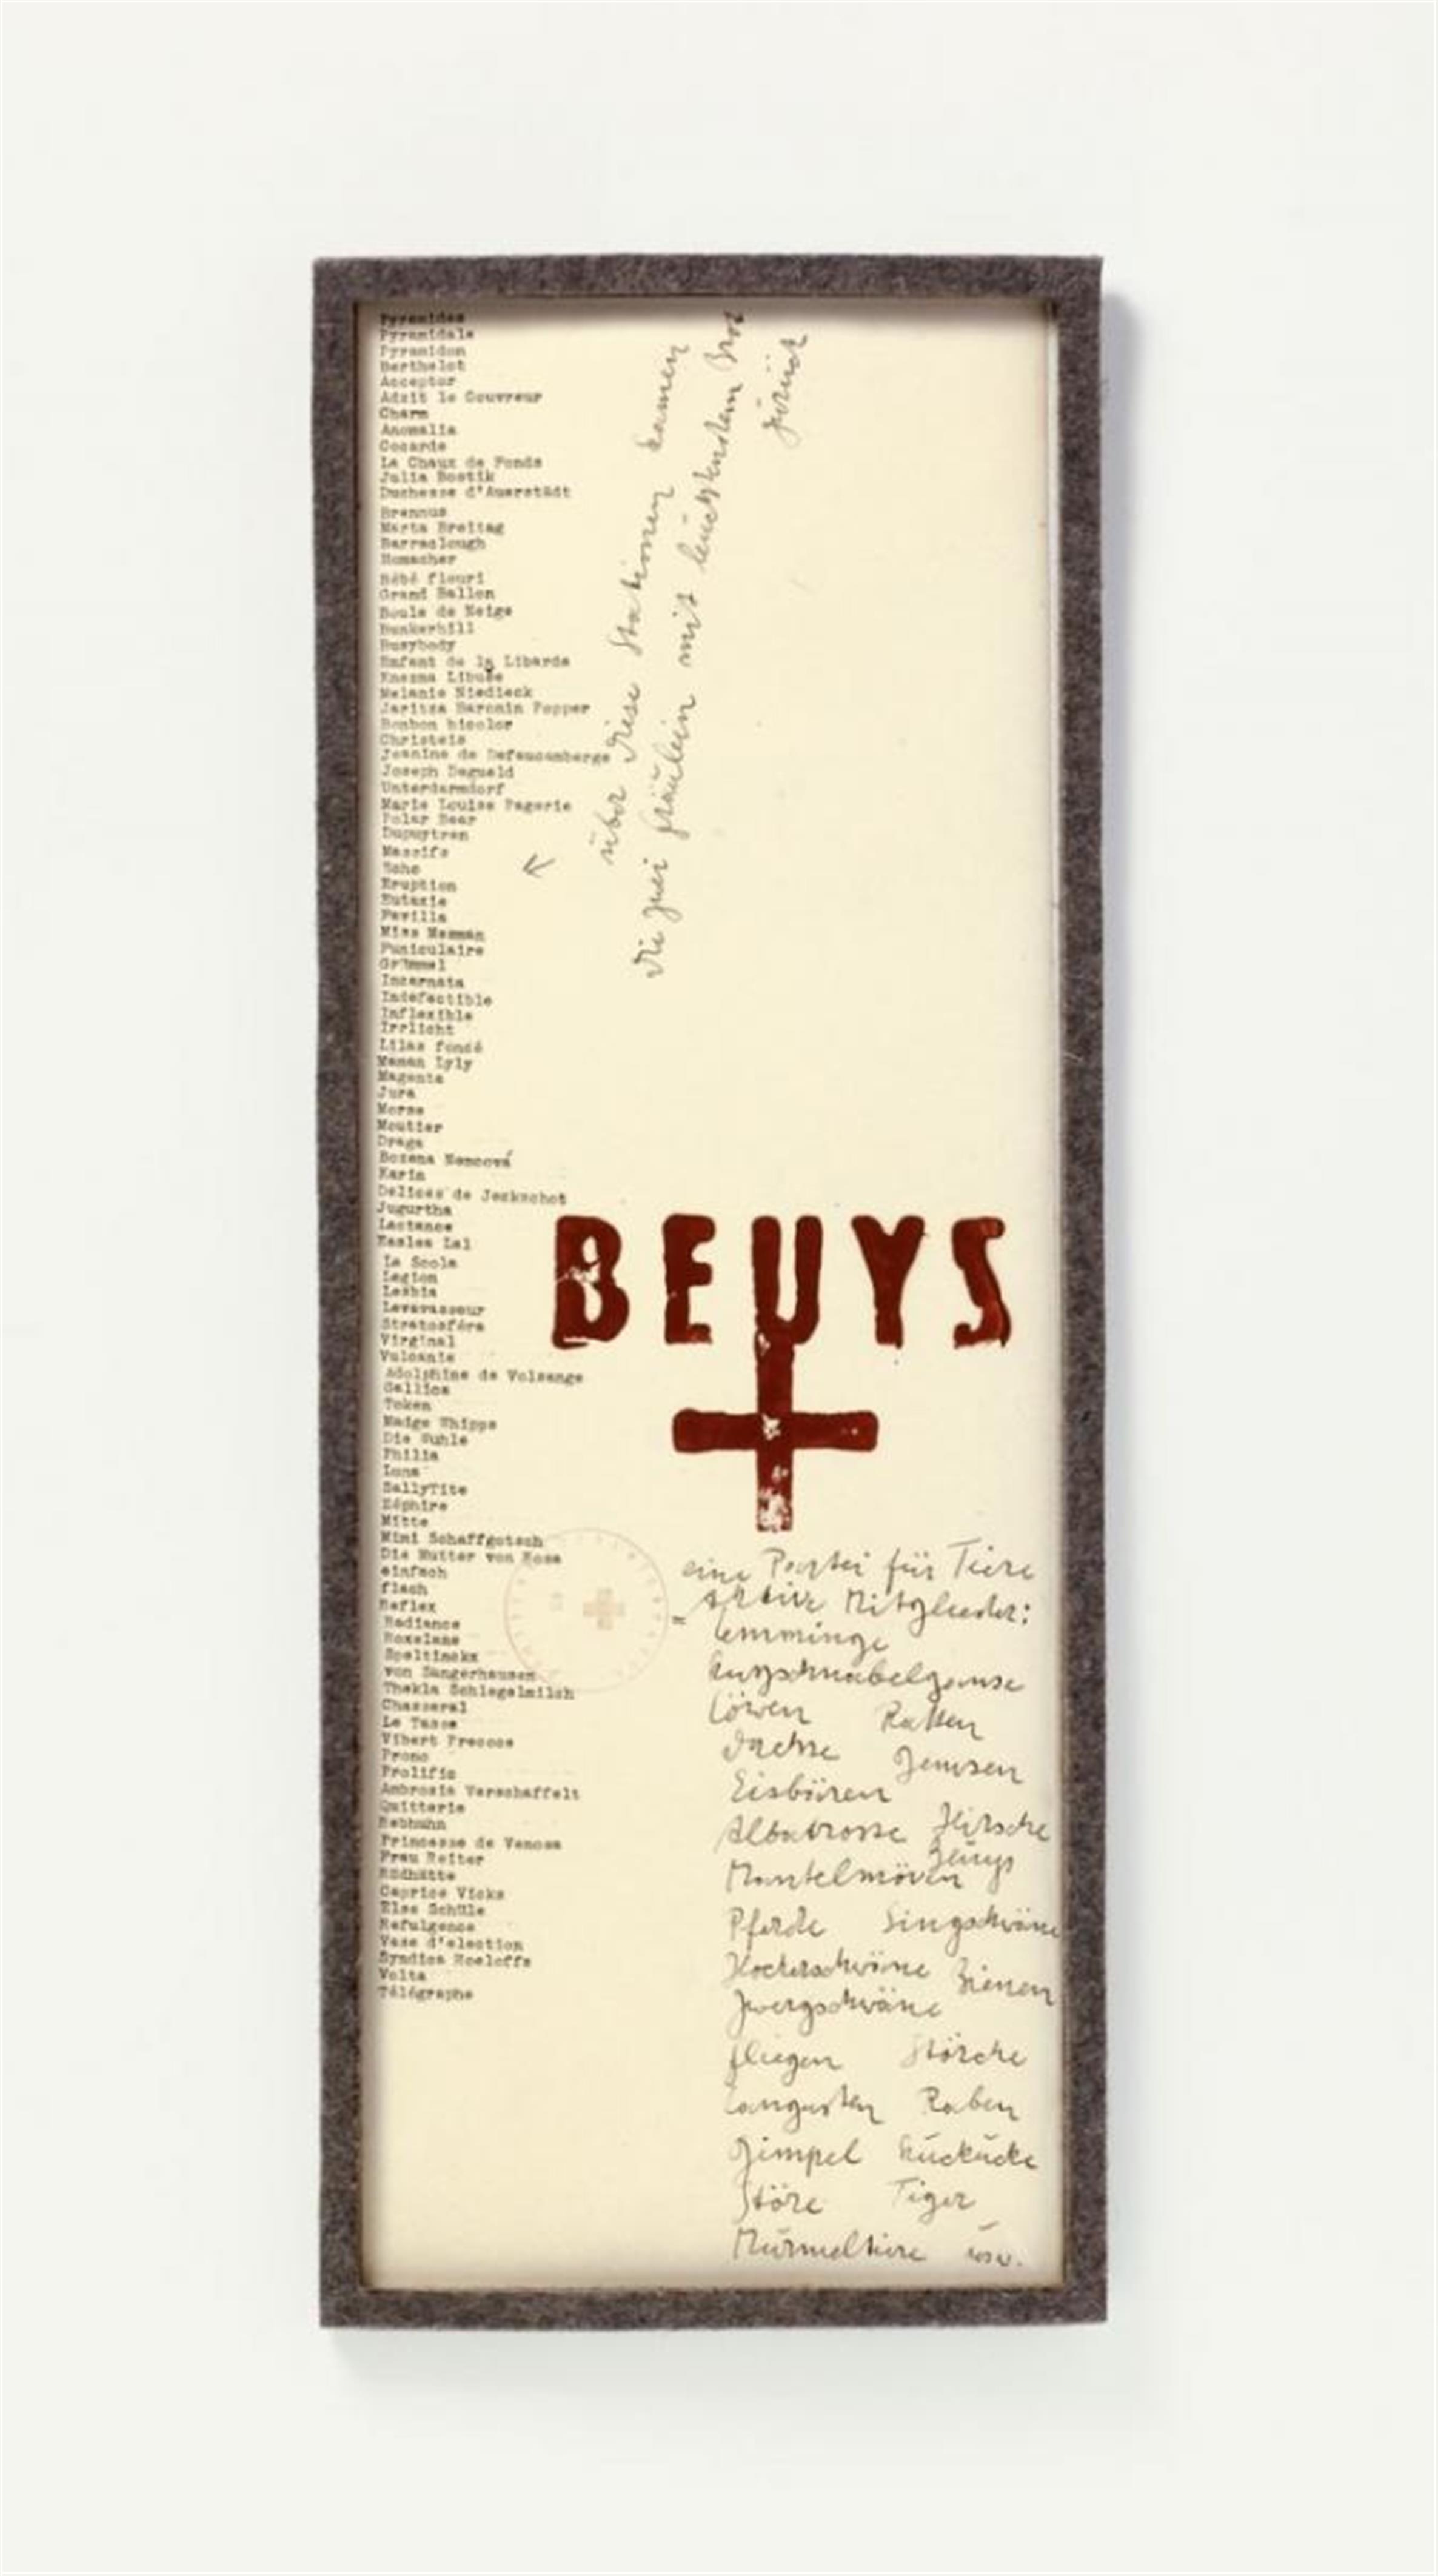 Joseph Beuys - Eine Partei für Tiere - image-1